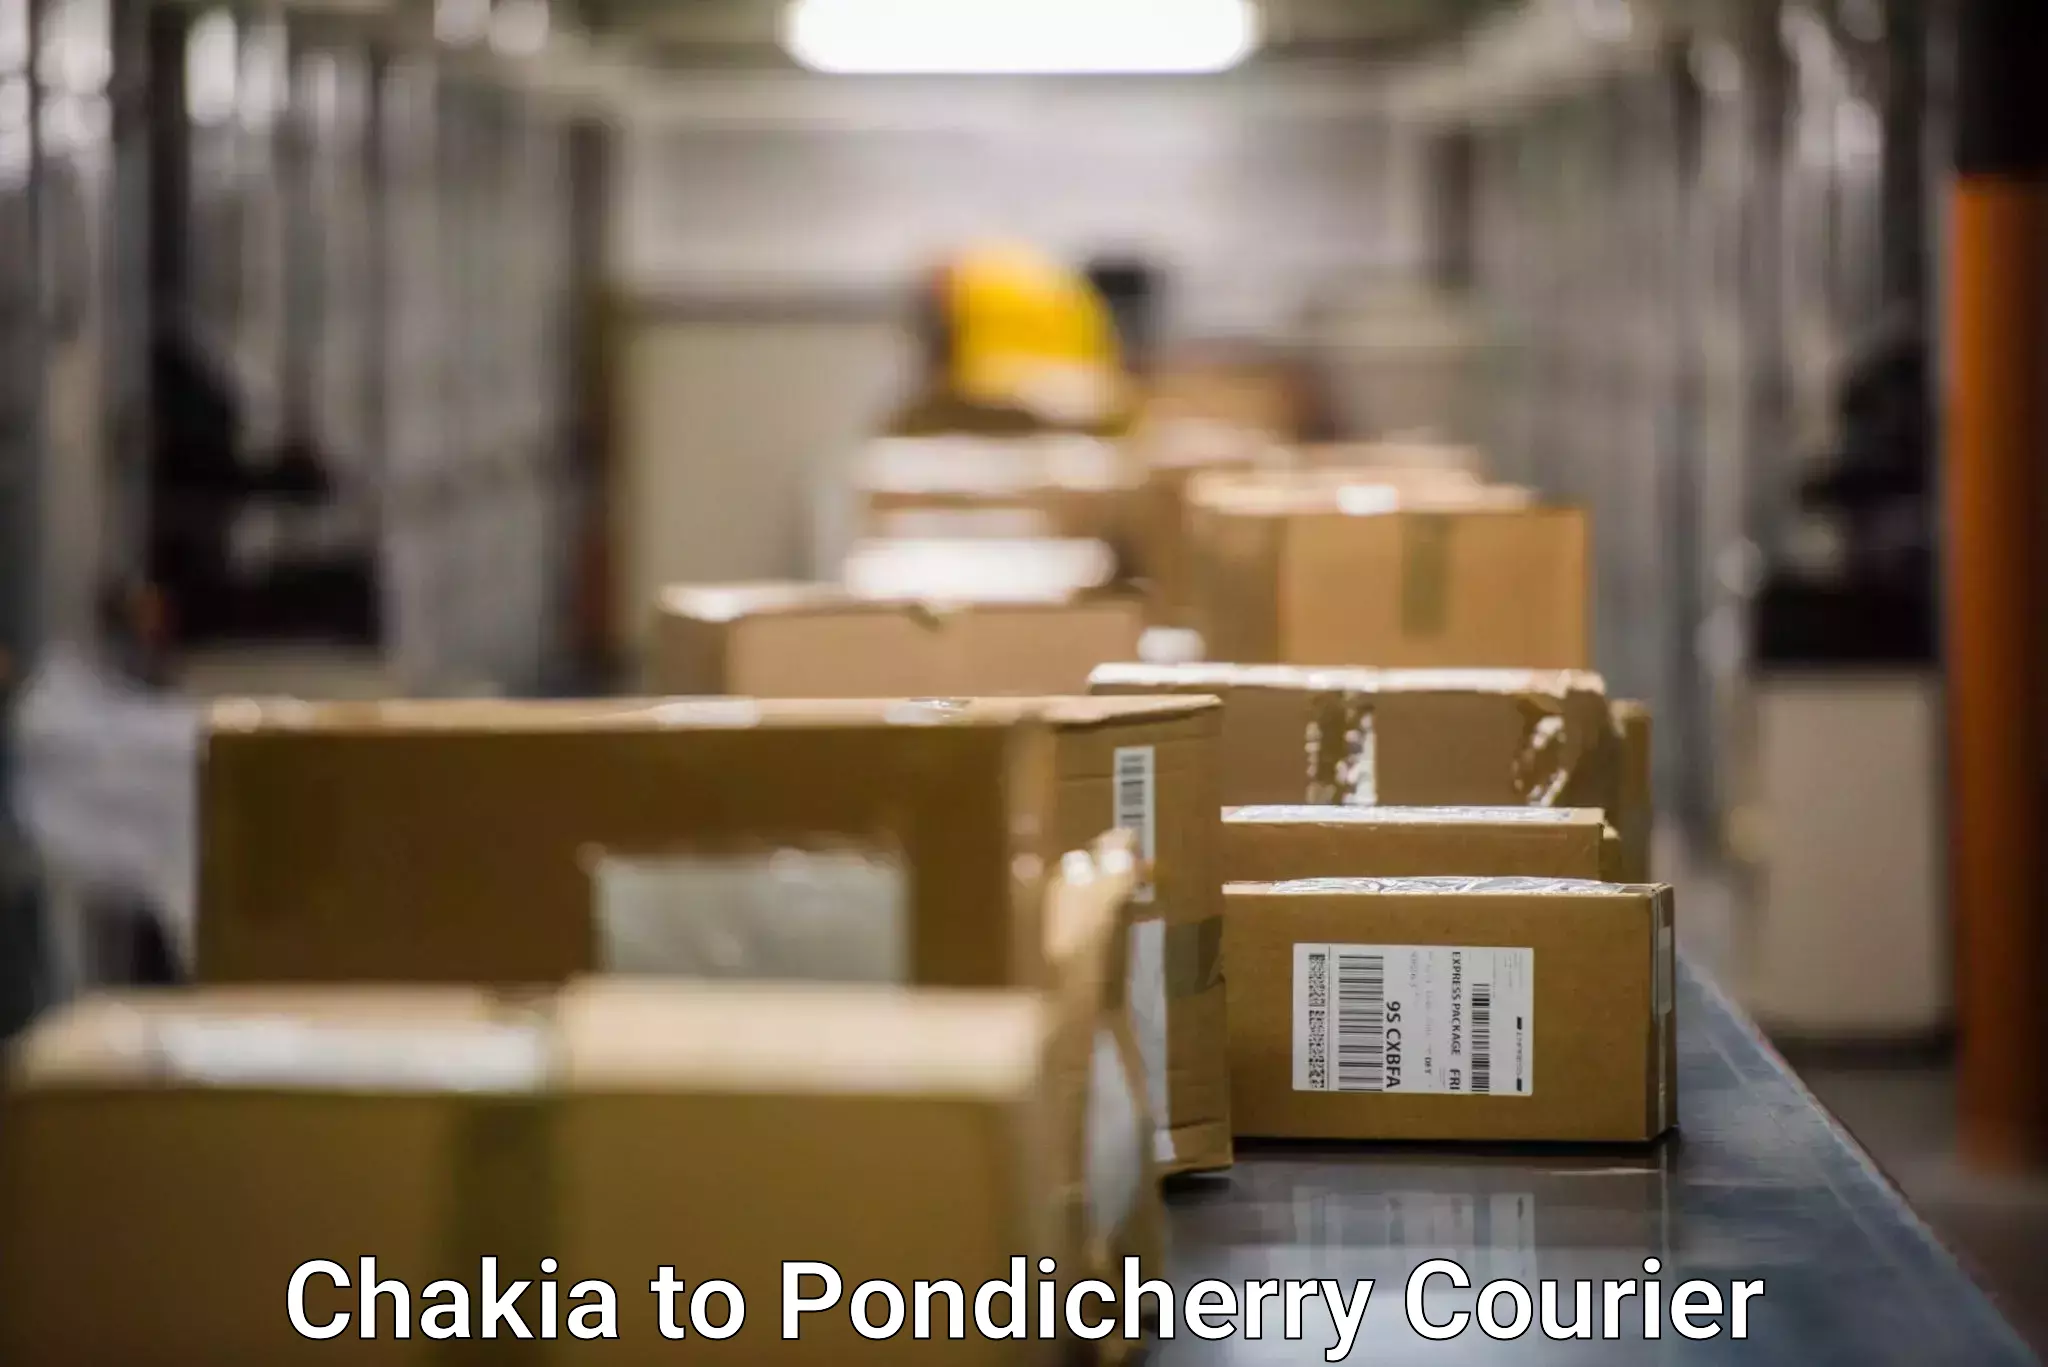 Residential courier service Chakia to Karaikal